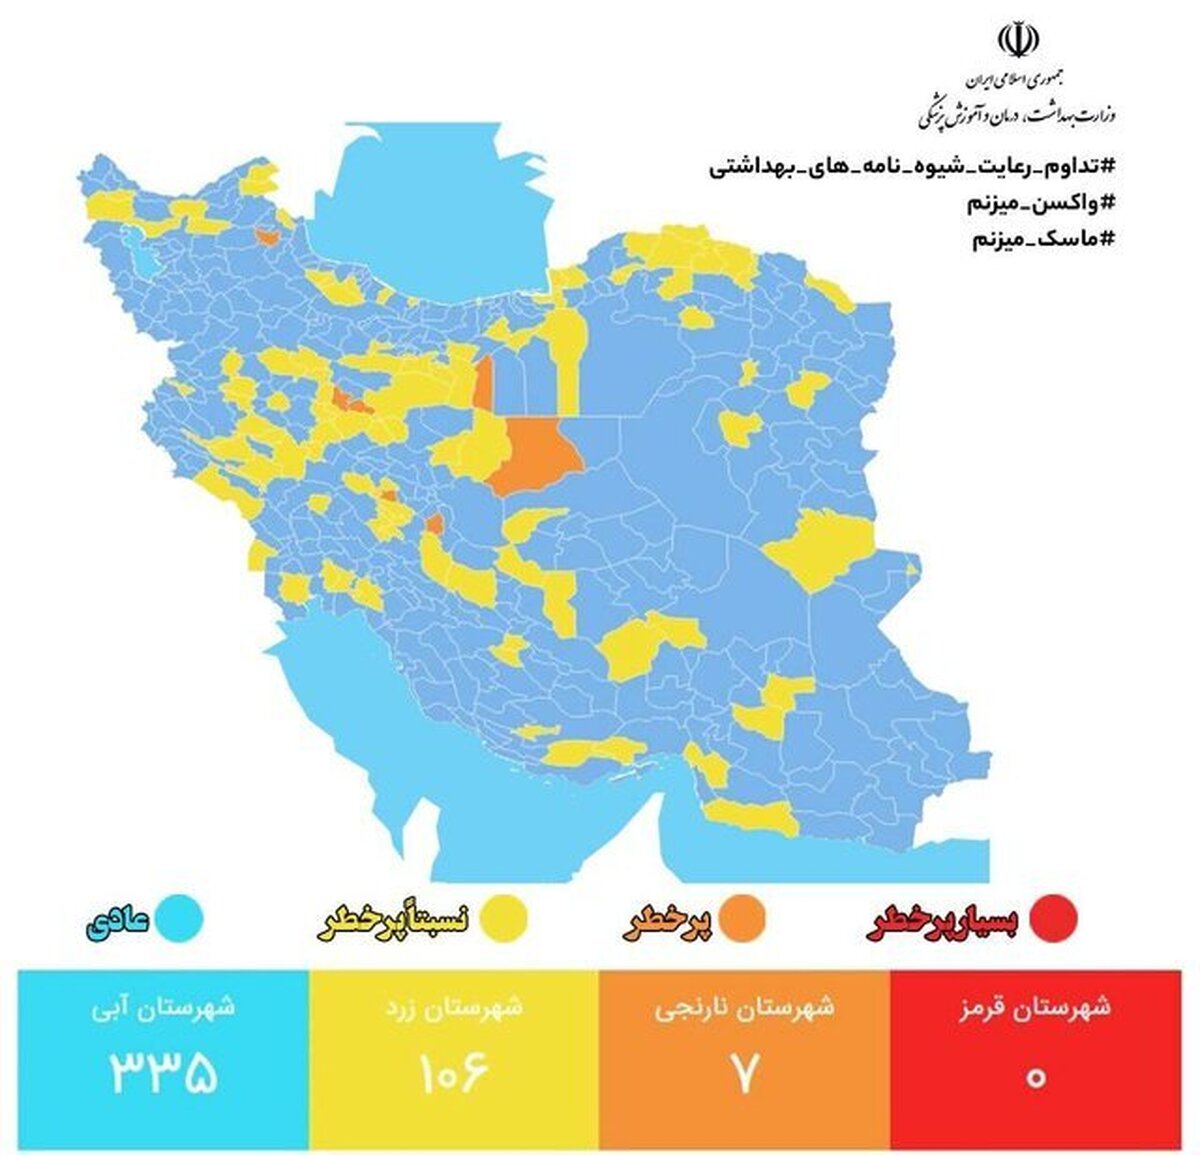 رنگ بندی شهرها از نظر کرونا: ۴۴۱ شهر در وضعیت آبی و زرد